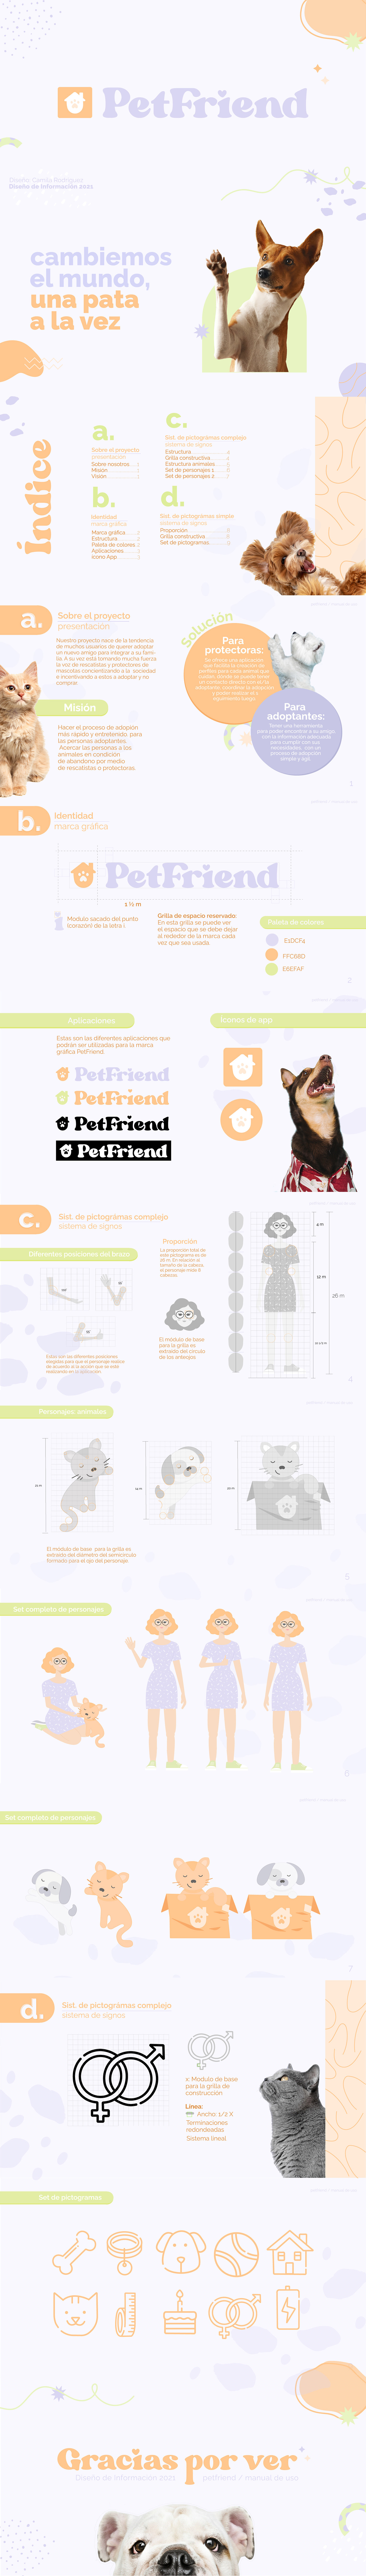 adoptar aplicaciones diseño diseñografico Manual de Identidad Manual de Marca mascotas pets